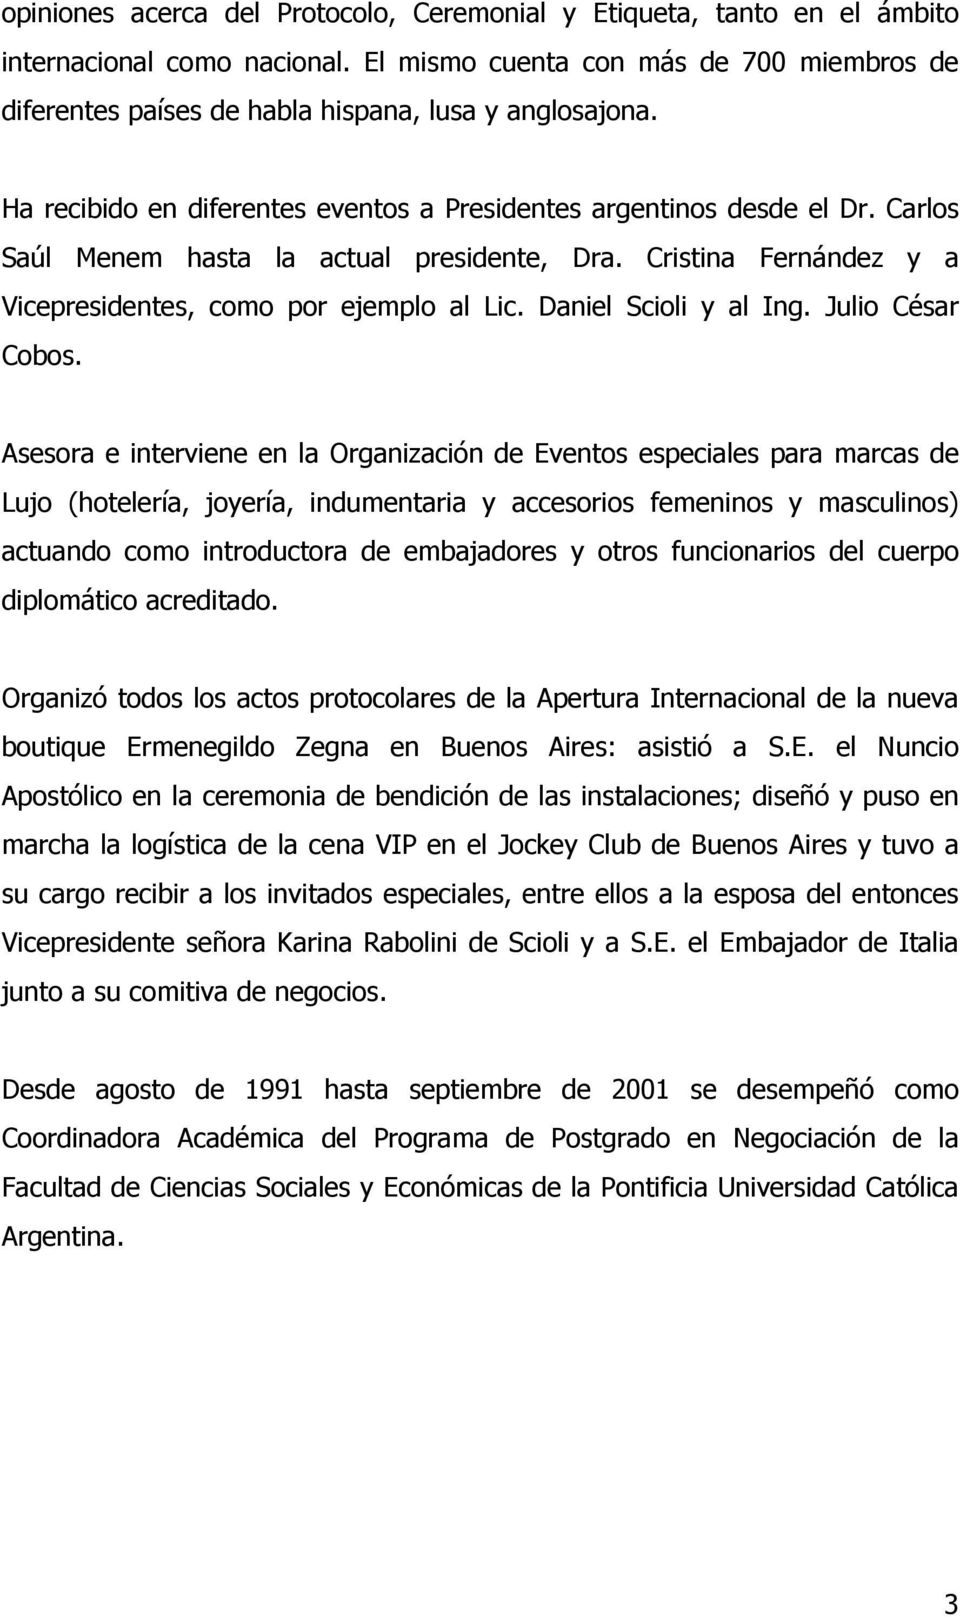 Carlos Saúl Menem hasta la actual presidente, Dra. Cristina Fernández y a Vicepresidentes, como por ejemplo al Lic. Daniel Scioli y al Ing. Julio César Cobos.